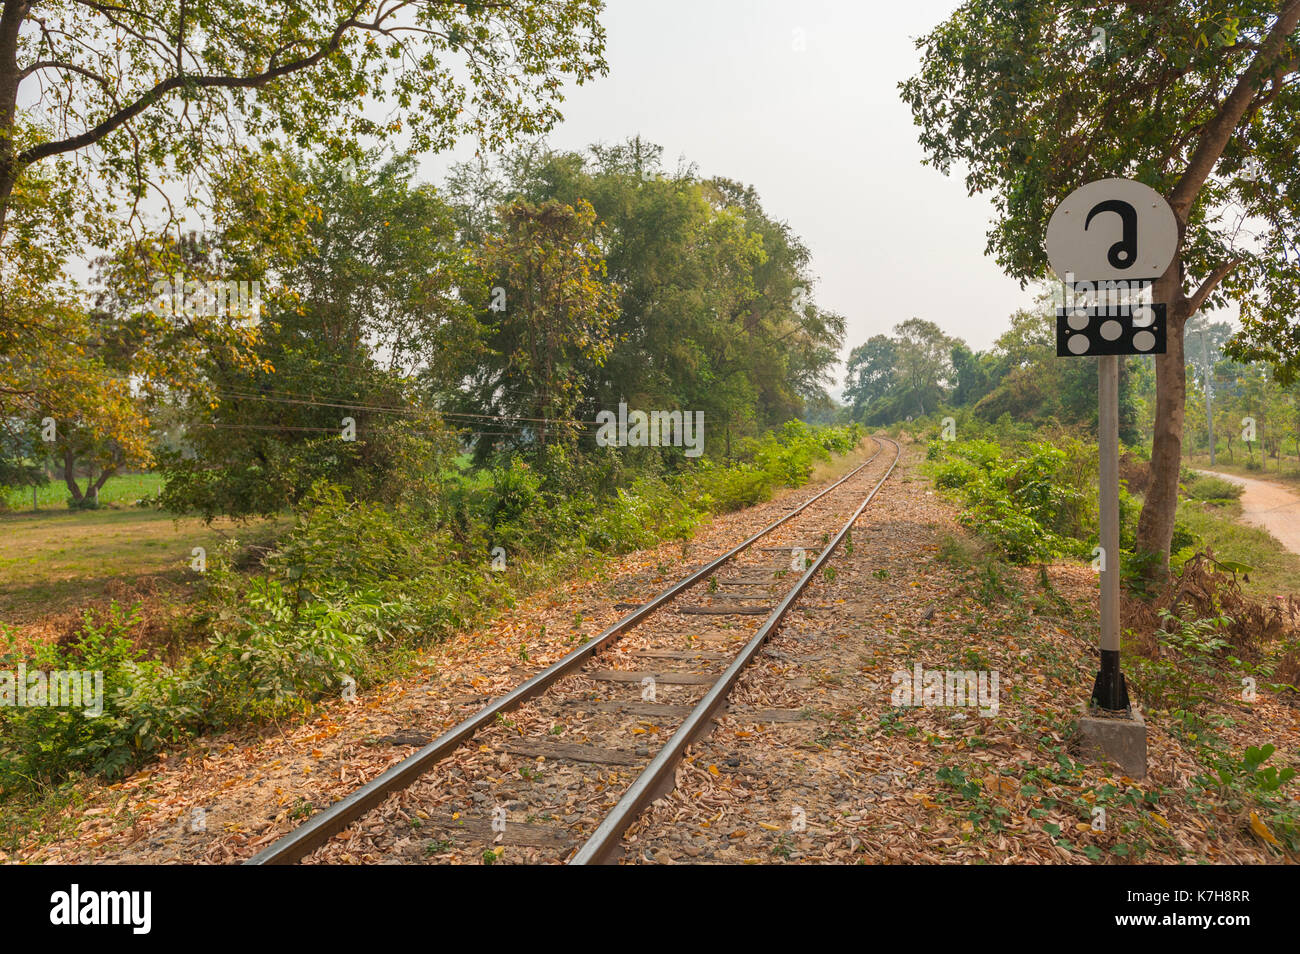 Ferrocarril a través del campo con señal de información tailandesa en el extremo sur del puente del río Kwai. Kanchanaburi, Tailandia Foto de stock